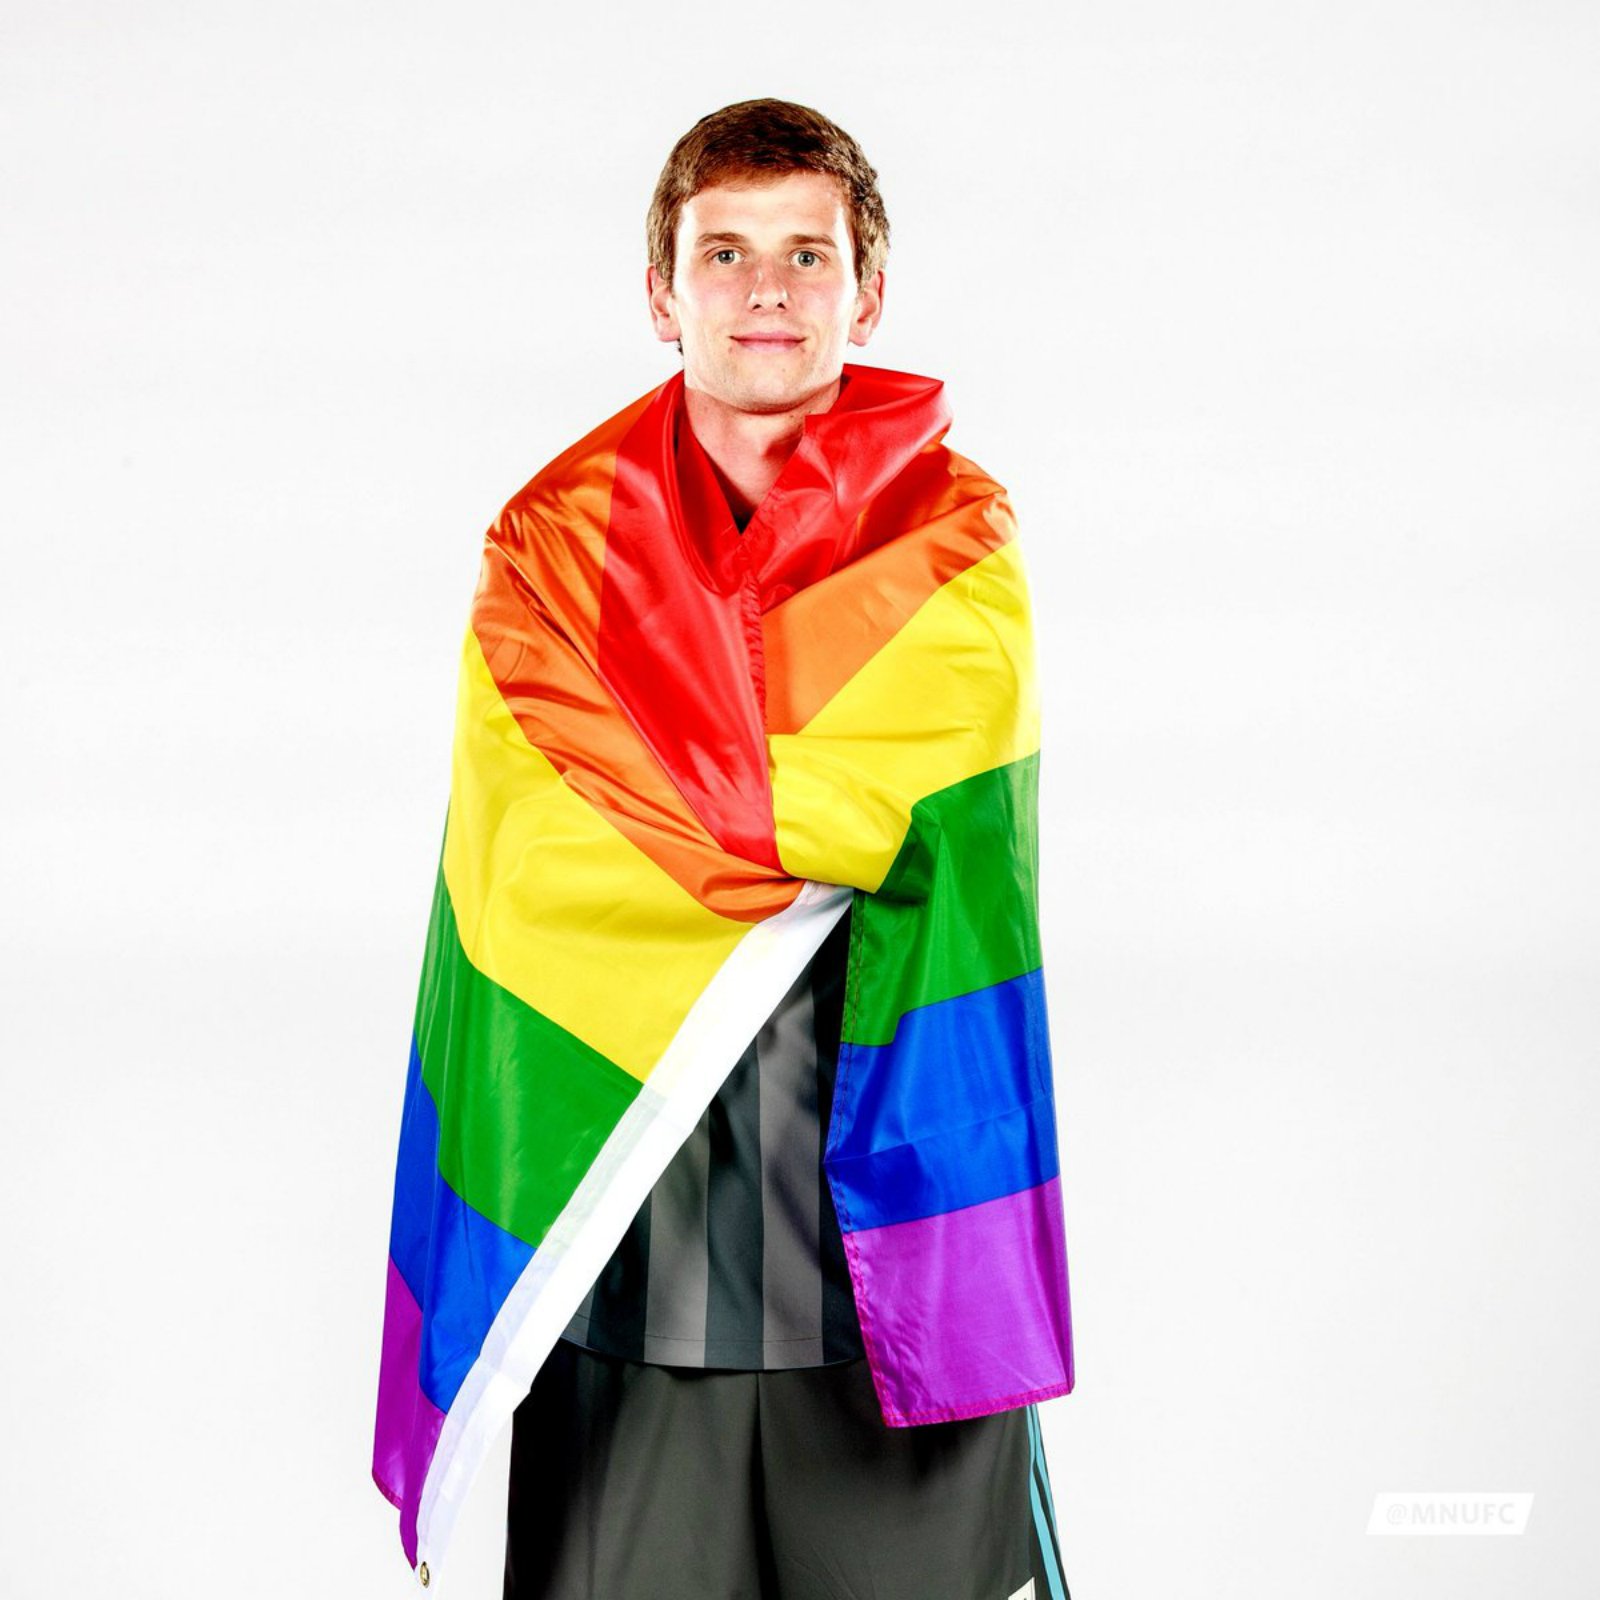 Collin Martin, pionero en el fútbol mundial: "Soy abiertamente gay"